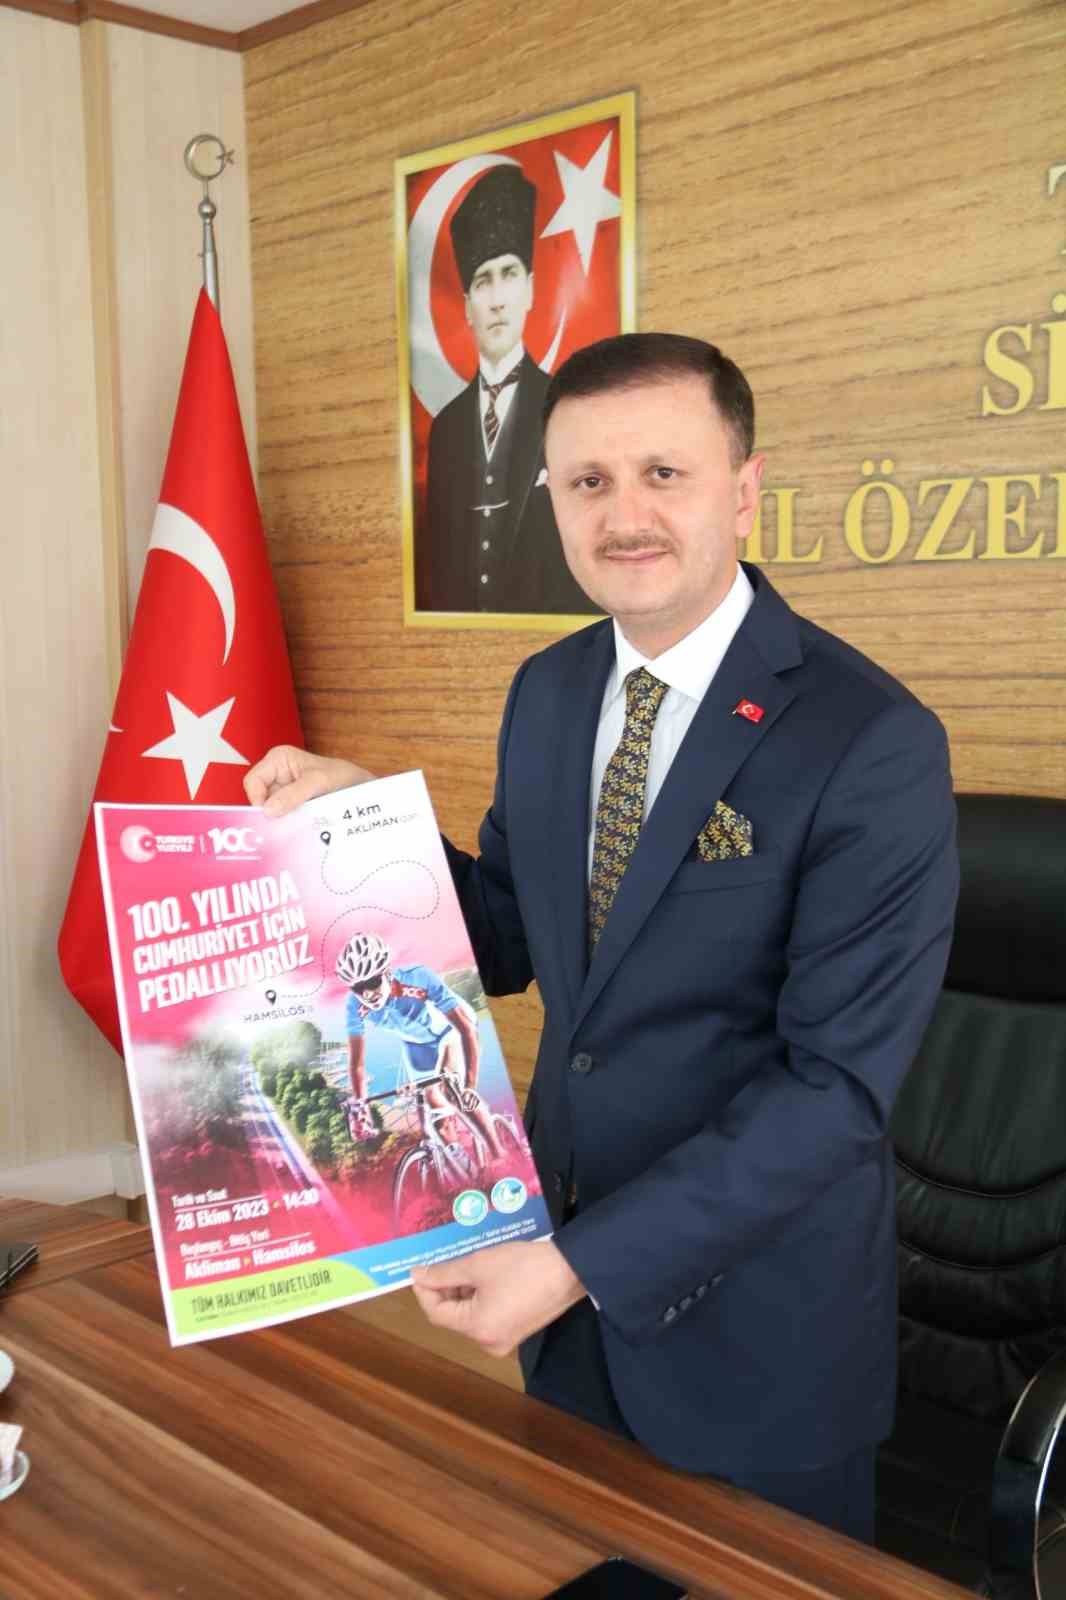 Sinop Cumhuriyet’in 100. yılı için pedal çevirecek